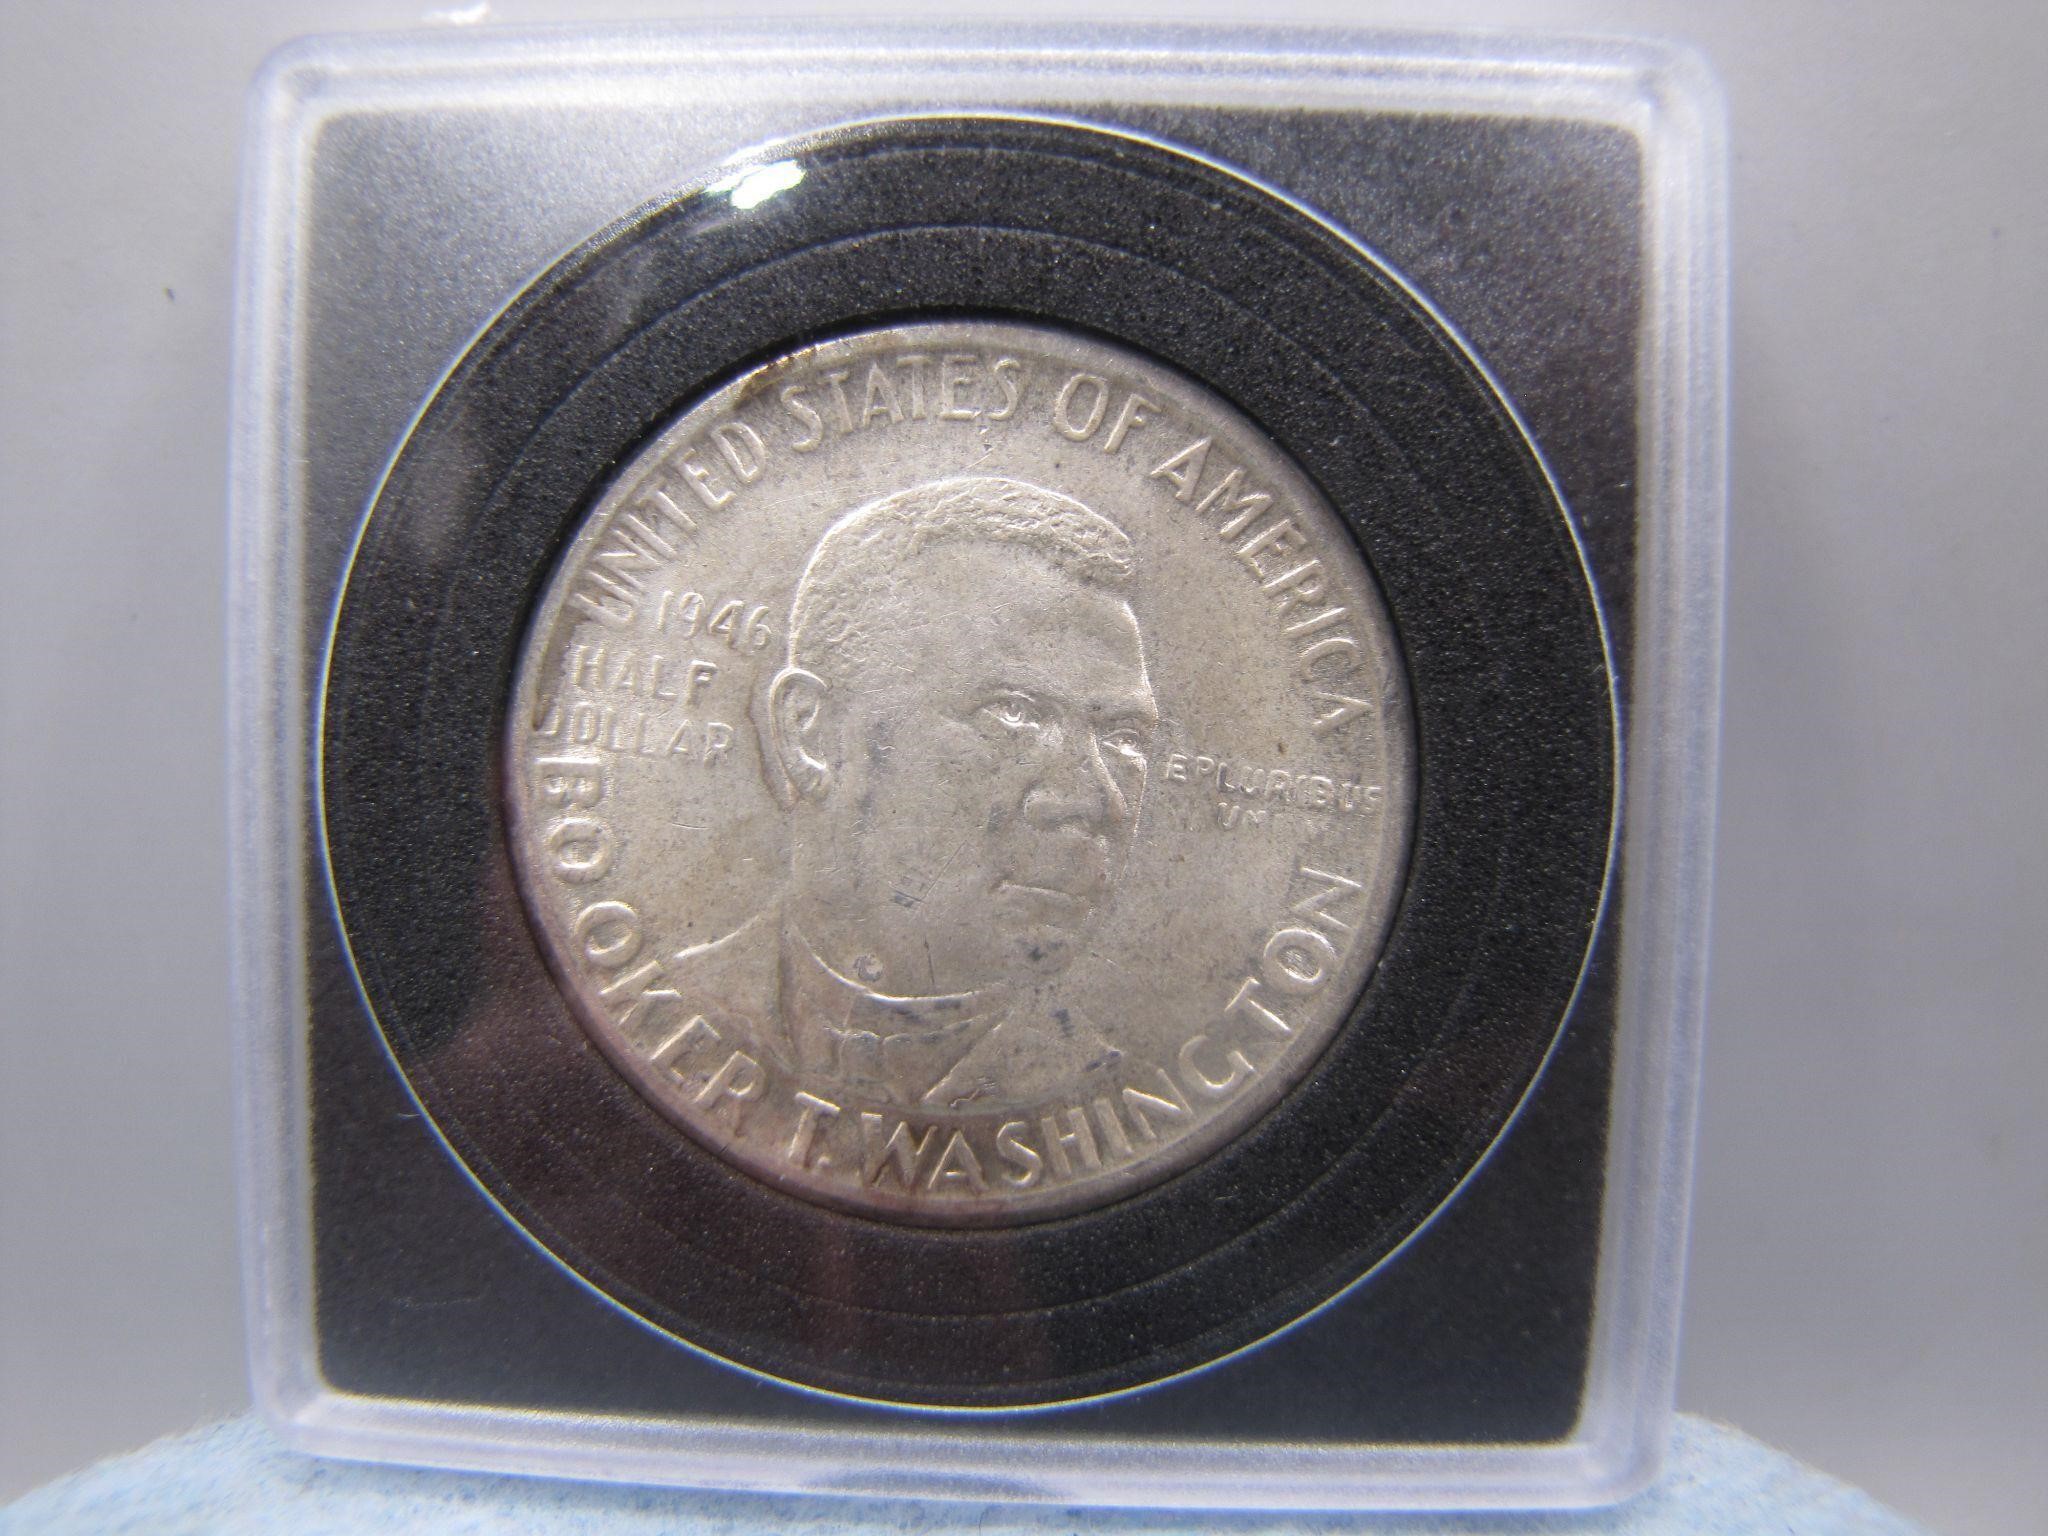 Commemorative U.S. Booker Silver Half Dollar